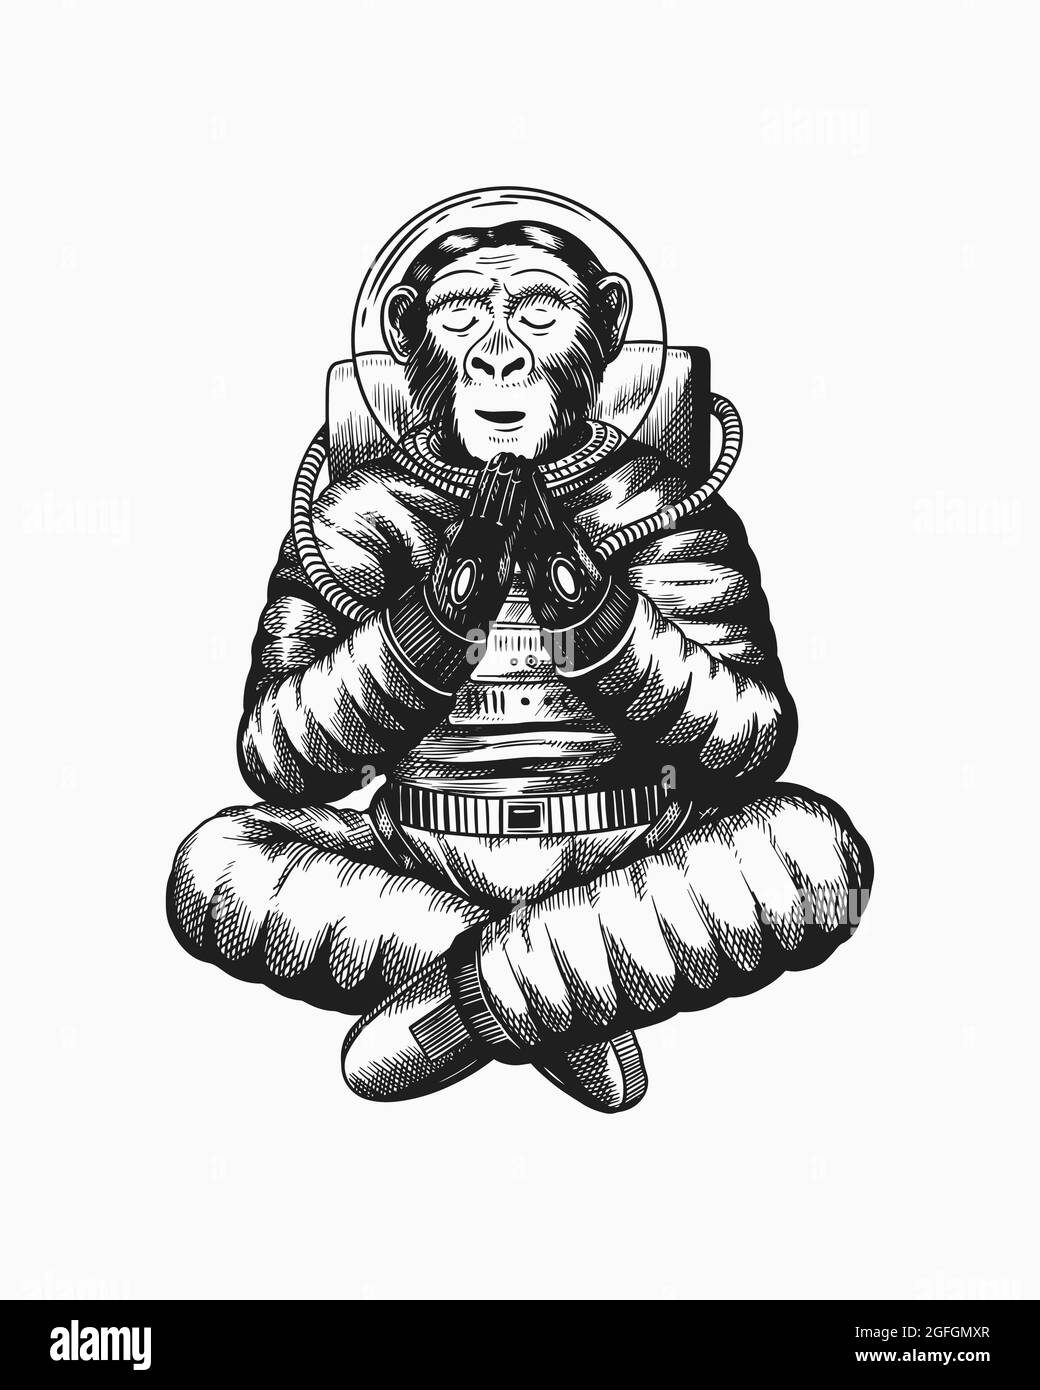 L'astronaute de singe médite dans une posture de yoga. Chimpanzé cosmonaute cosmonaute. Animal à la mode. Ancien croquis monochrome gravé à la main Illustration de Vecteur